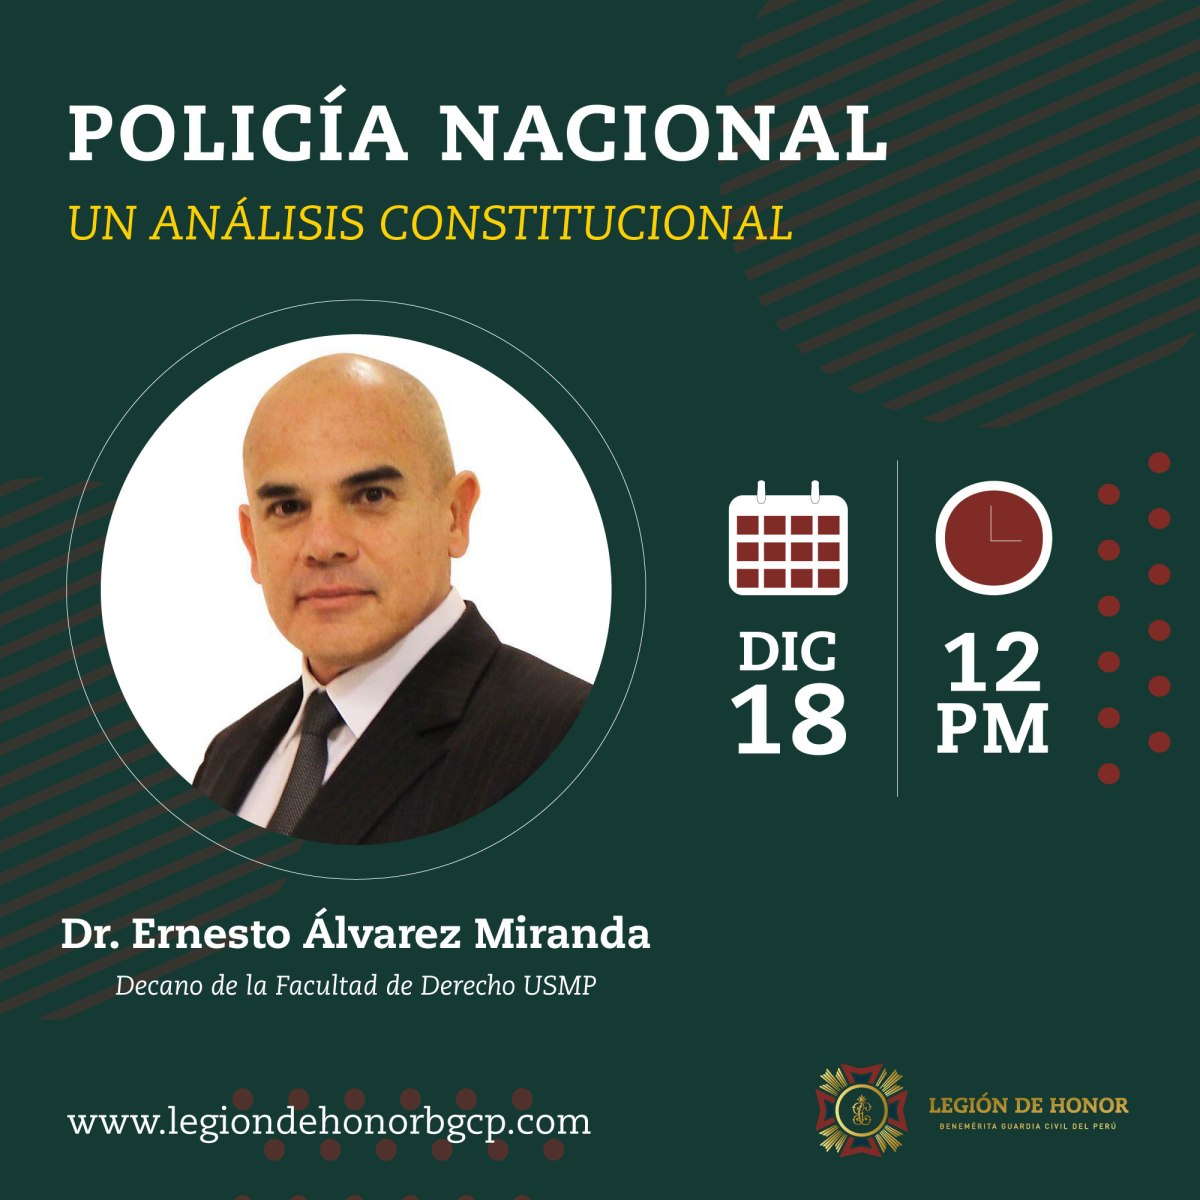 La Policía Nacional del Perú y su rol según la Constitución